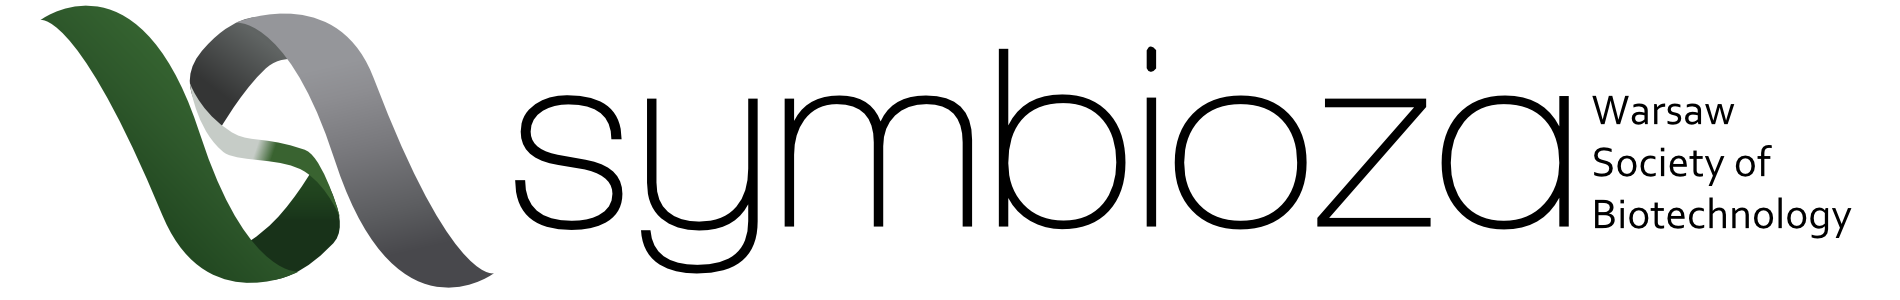 stowarzyszenie-logo-projekt001 (1)